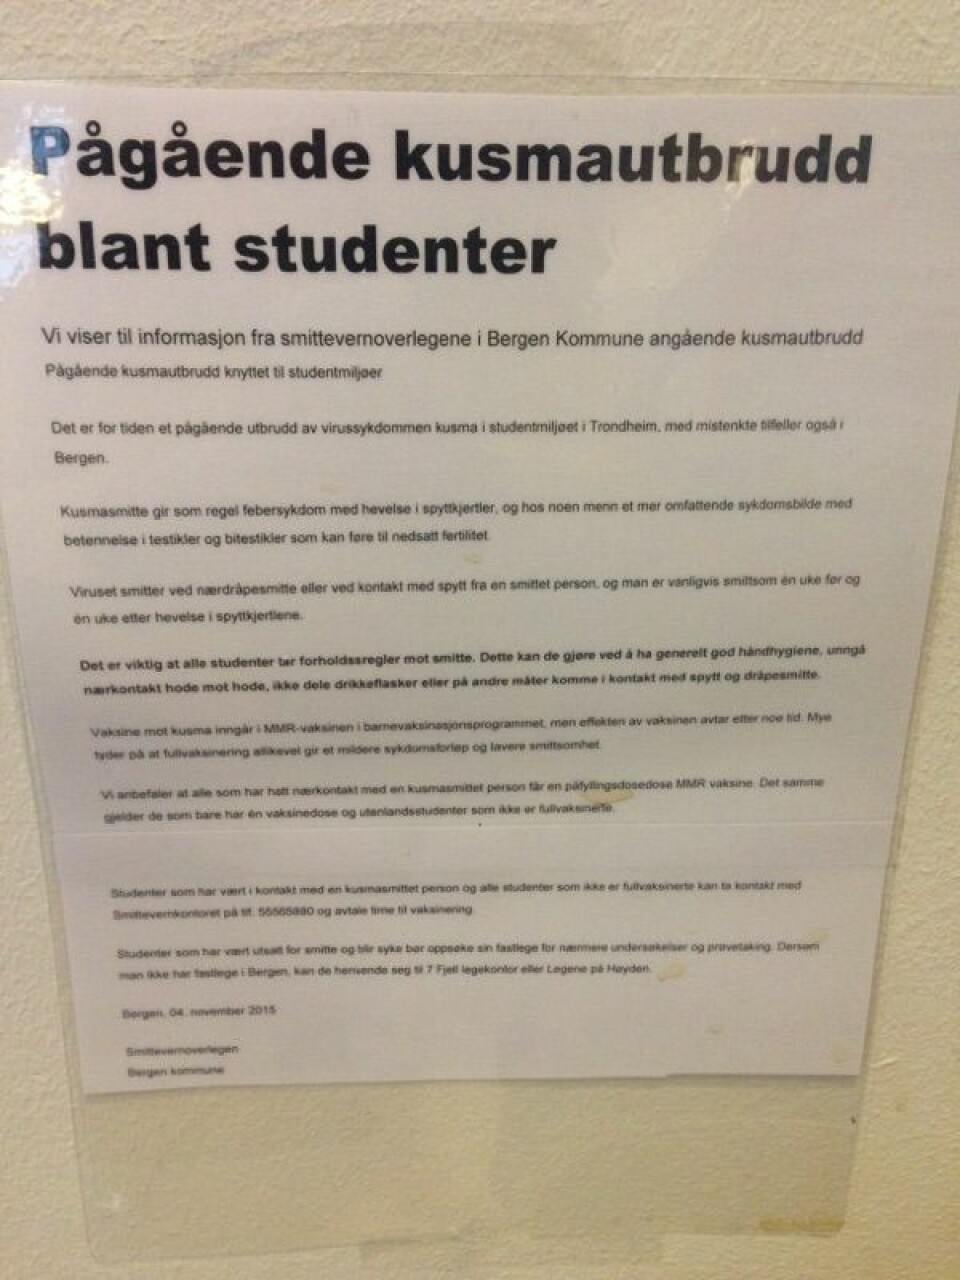 Mandag 9. november ble studenter ved Universitetet i Bergen møtt med dette oppslaget om pågående kusma-utbrudd blant studenter. Studenter oppfordres til ikke å drikke av hverandres flasker, og unngå hode til hode-kontakt. Informasjonen er fra smittevernkontoret i Bergen kommune.  (Foto: Rebekka Lae)